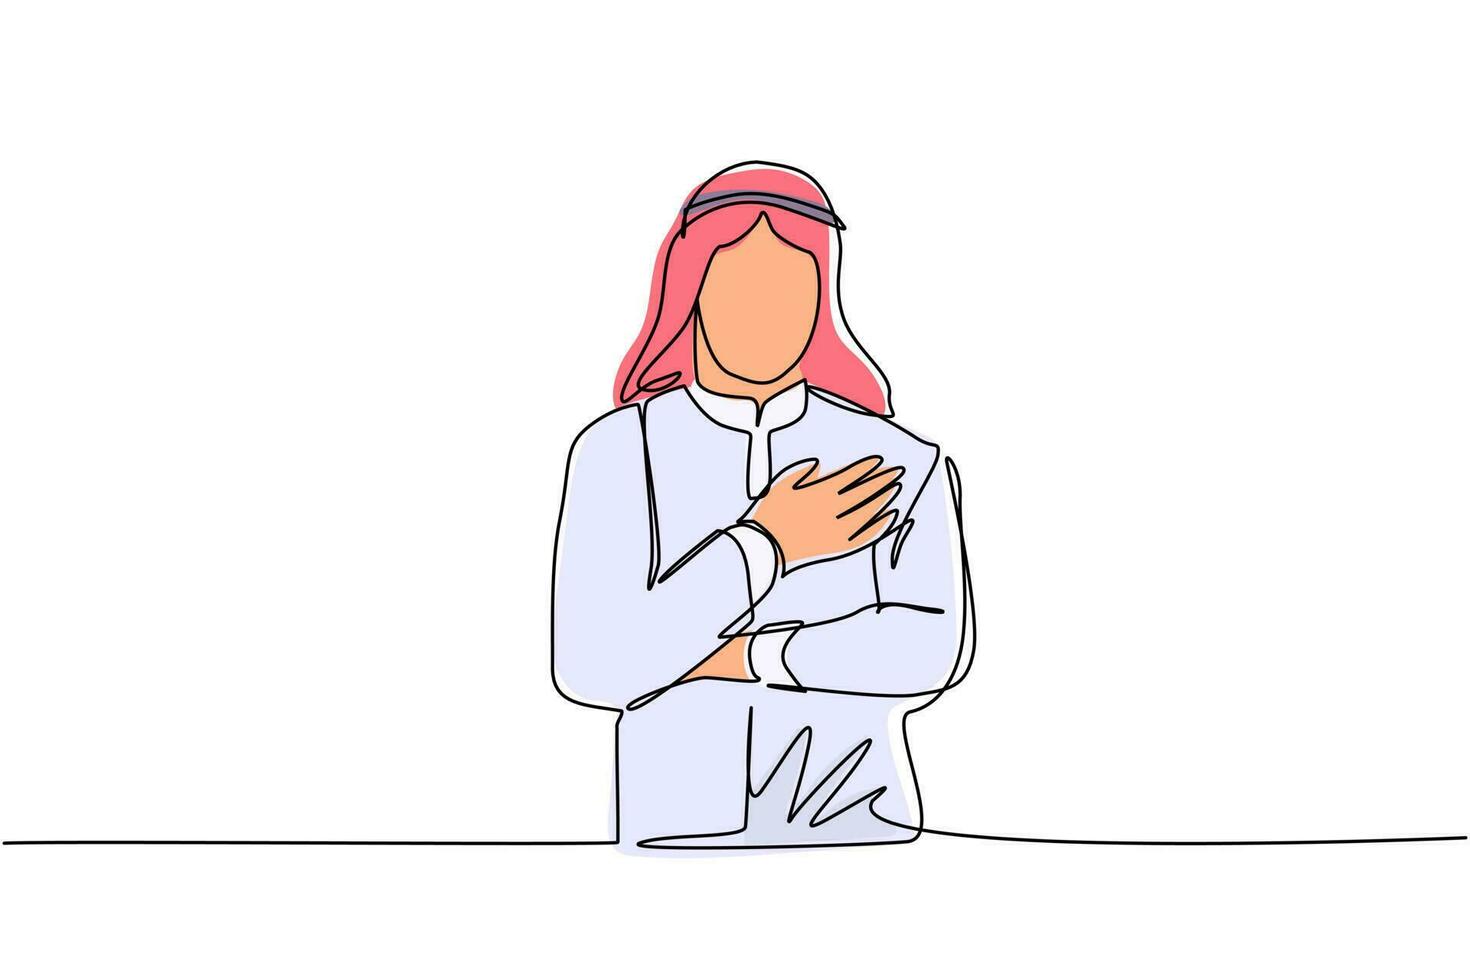 enkele lijntekening jonge arabische man die de handen op de borst houdt. lachende vriendelijke man die dankbaarheid uitdrukt. emotie, lichaamstaal concept. doorlopende lijn tekenen ontwerp grafische vectorillustratie vector